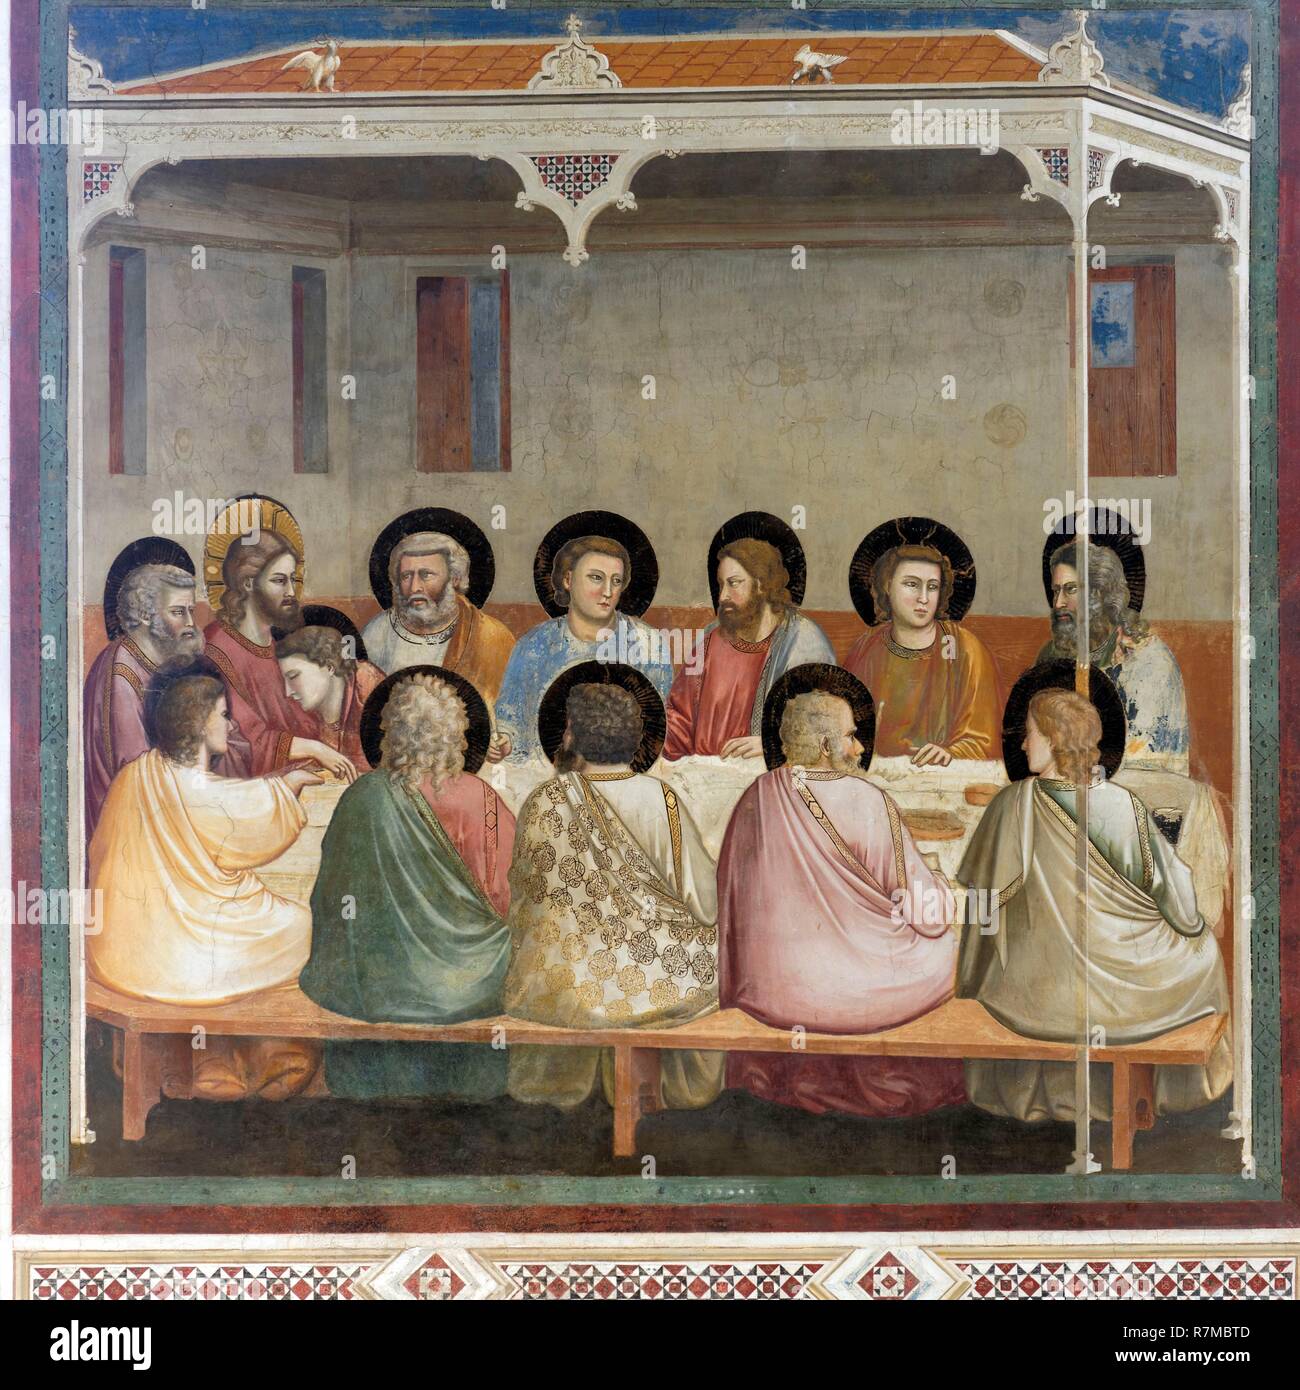 Italien, Venetien, Padua, Padua, Cappella degli Scrovegni, Fresken von